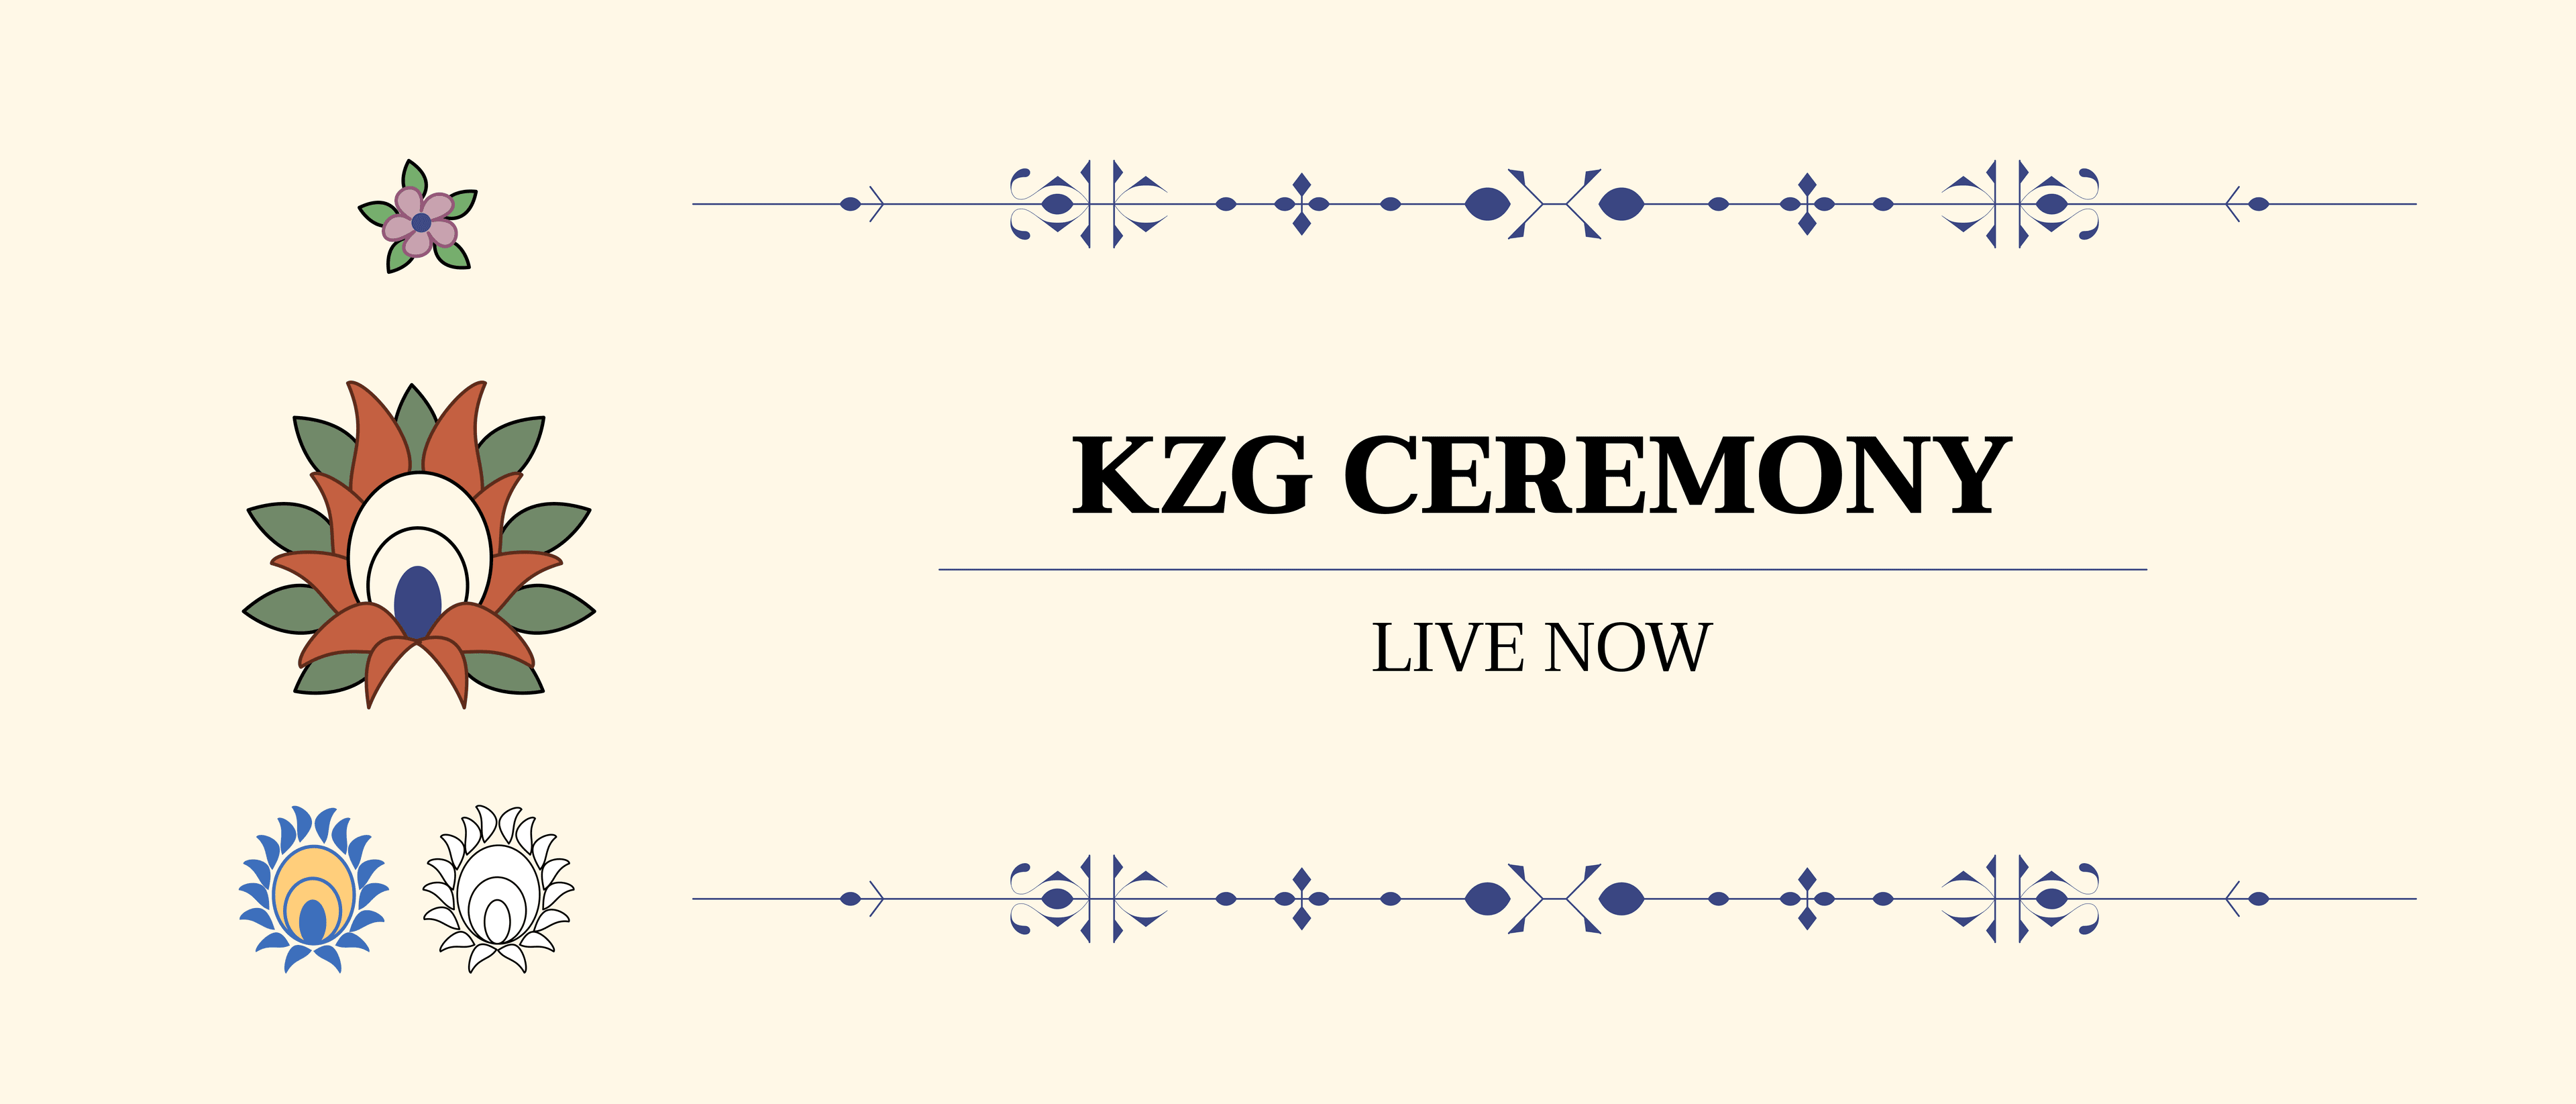 KZG समारोह की घोषणा